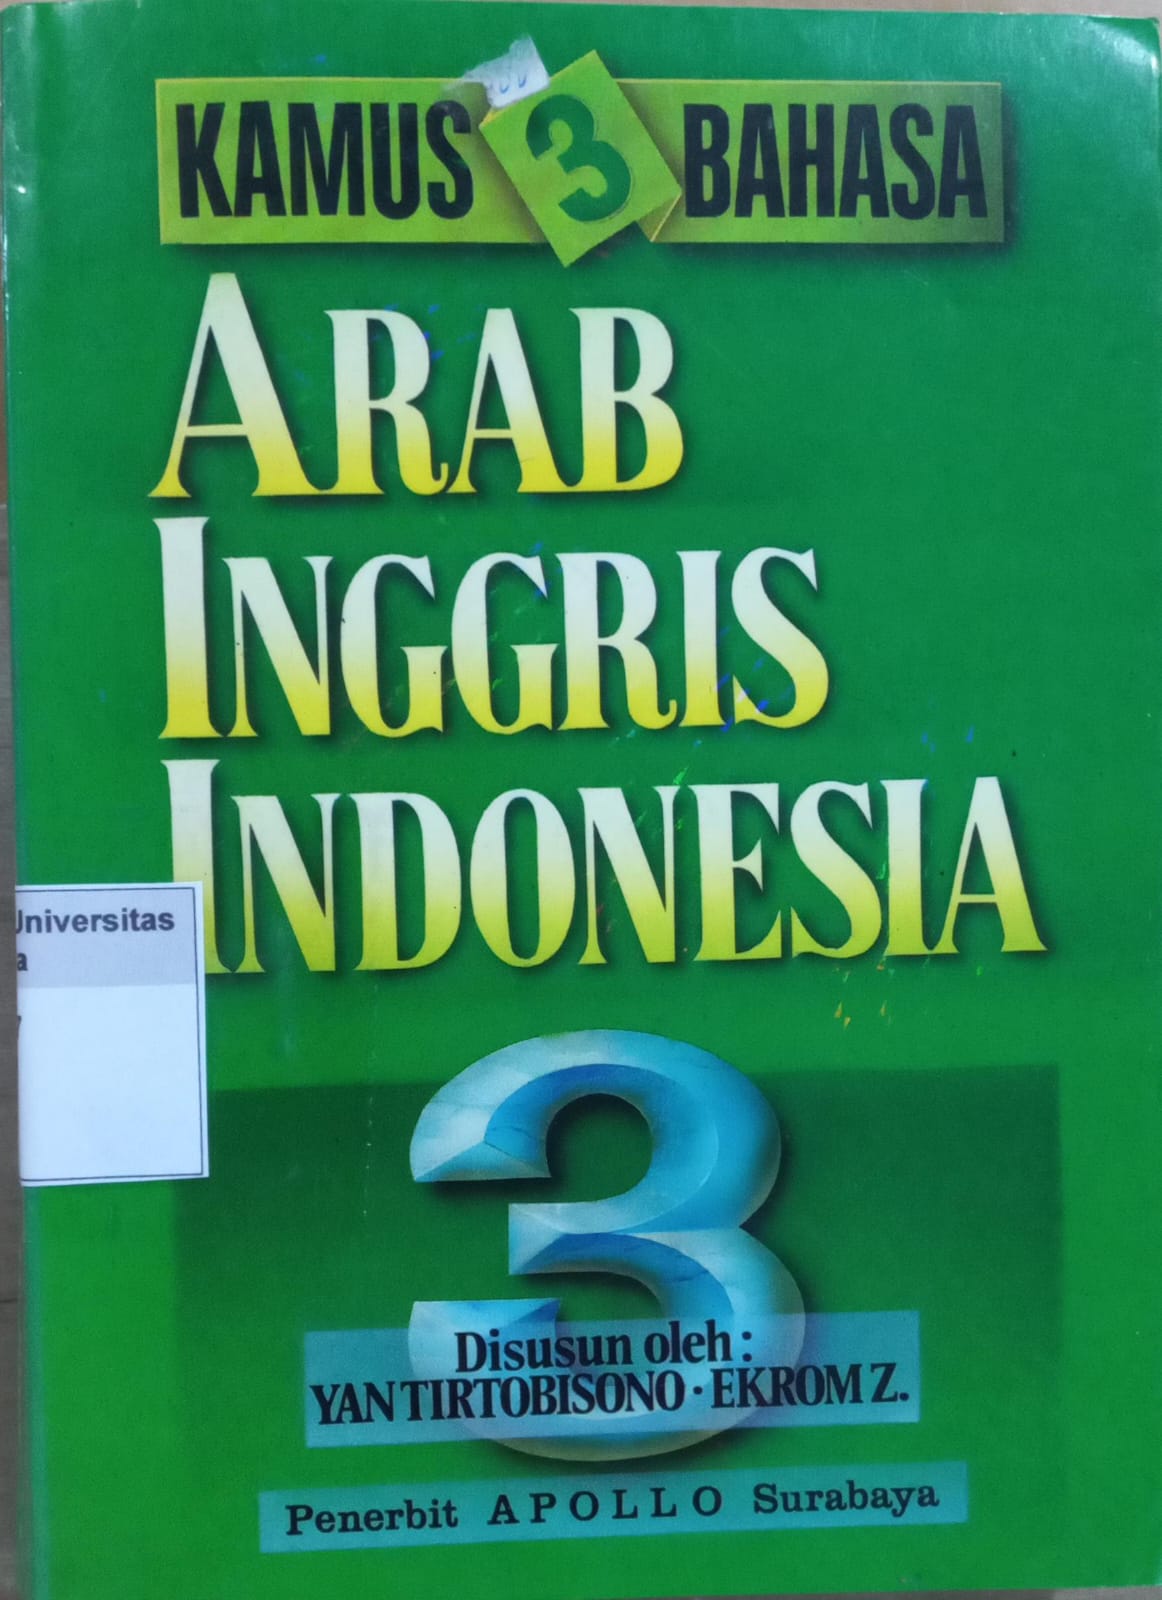 Kamus 3 Bahasa : Arab - Inggris - Indonesia